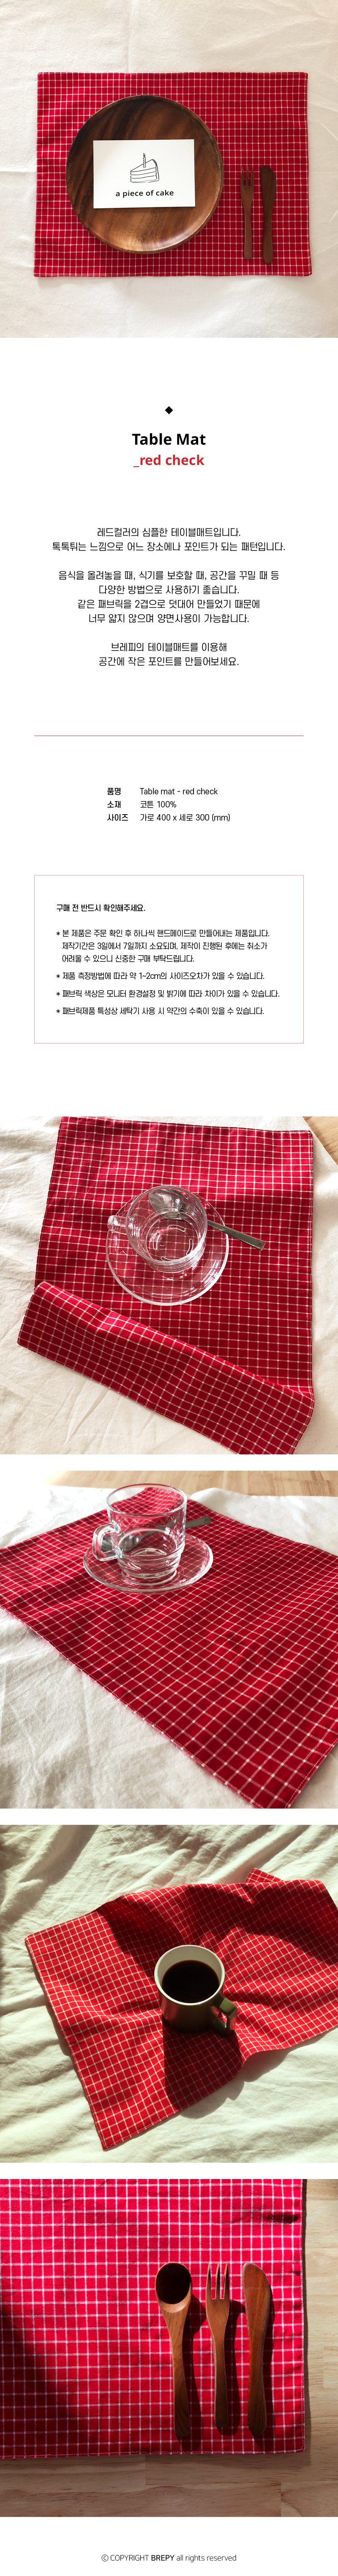 패브릭 테이블매트 (fabric table mat) - red check 6,800원 - 브레피 패브릭, 주방 패브릭, 식탁, 식탁매트 바보사랑 패브릭 테이블매트 (fabric table mat) - red check 6,800원 - 브레피 패브릭, 주방 패브릭, 식탁, 식탁매트 바보사랑